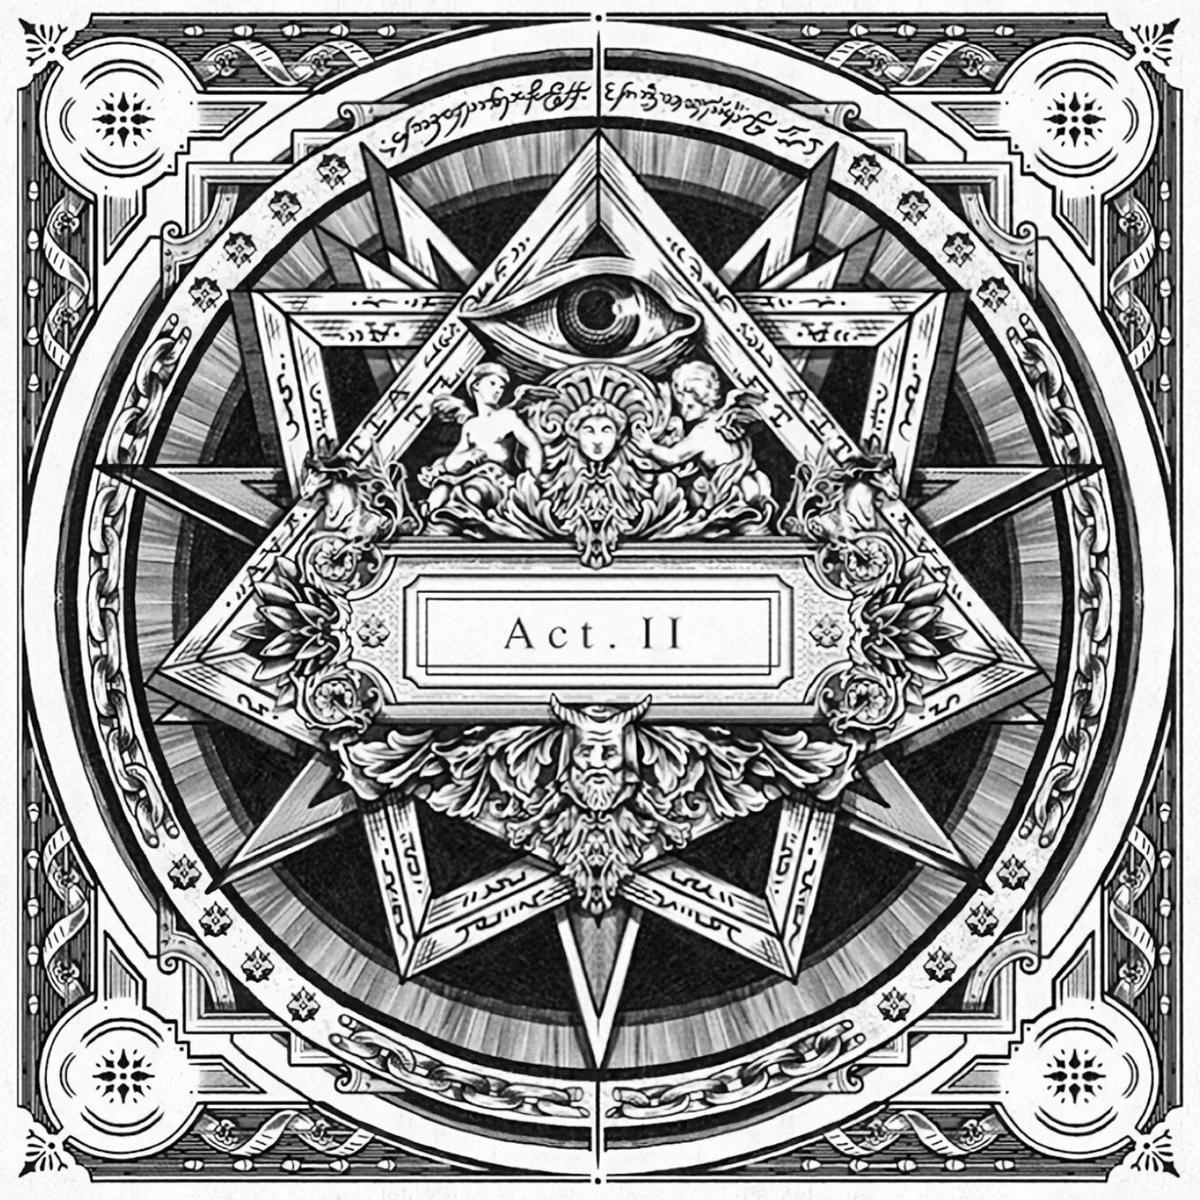 Jay Electronica's album Act II